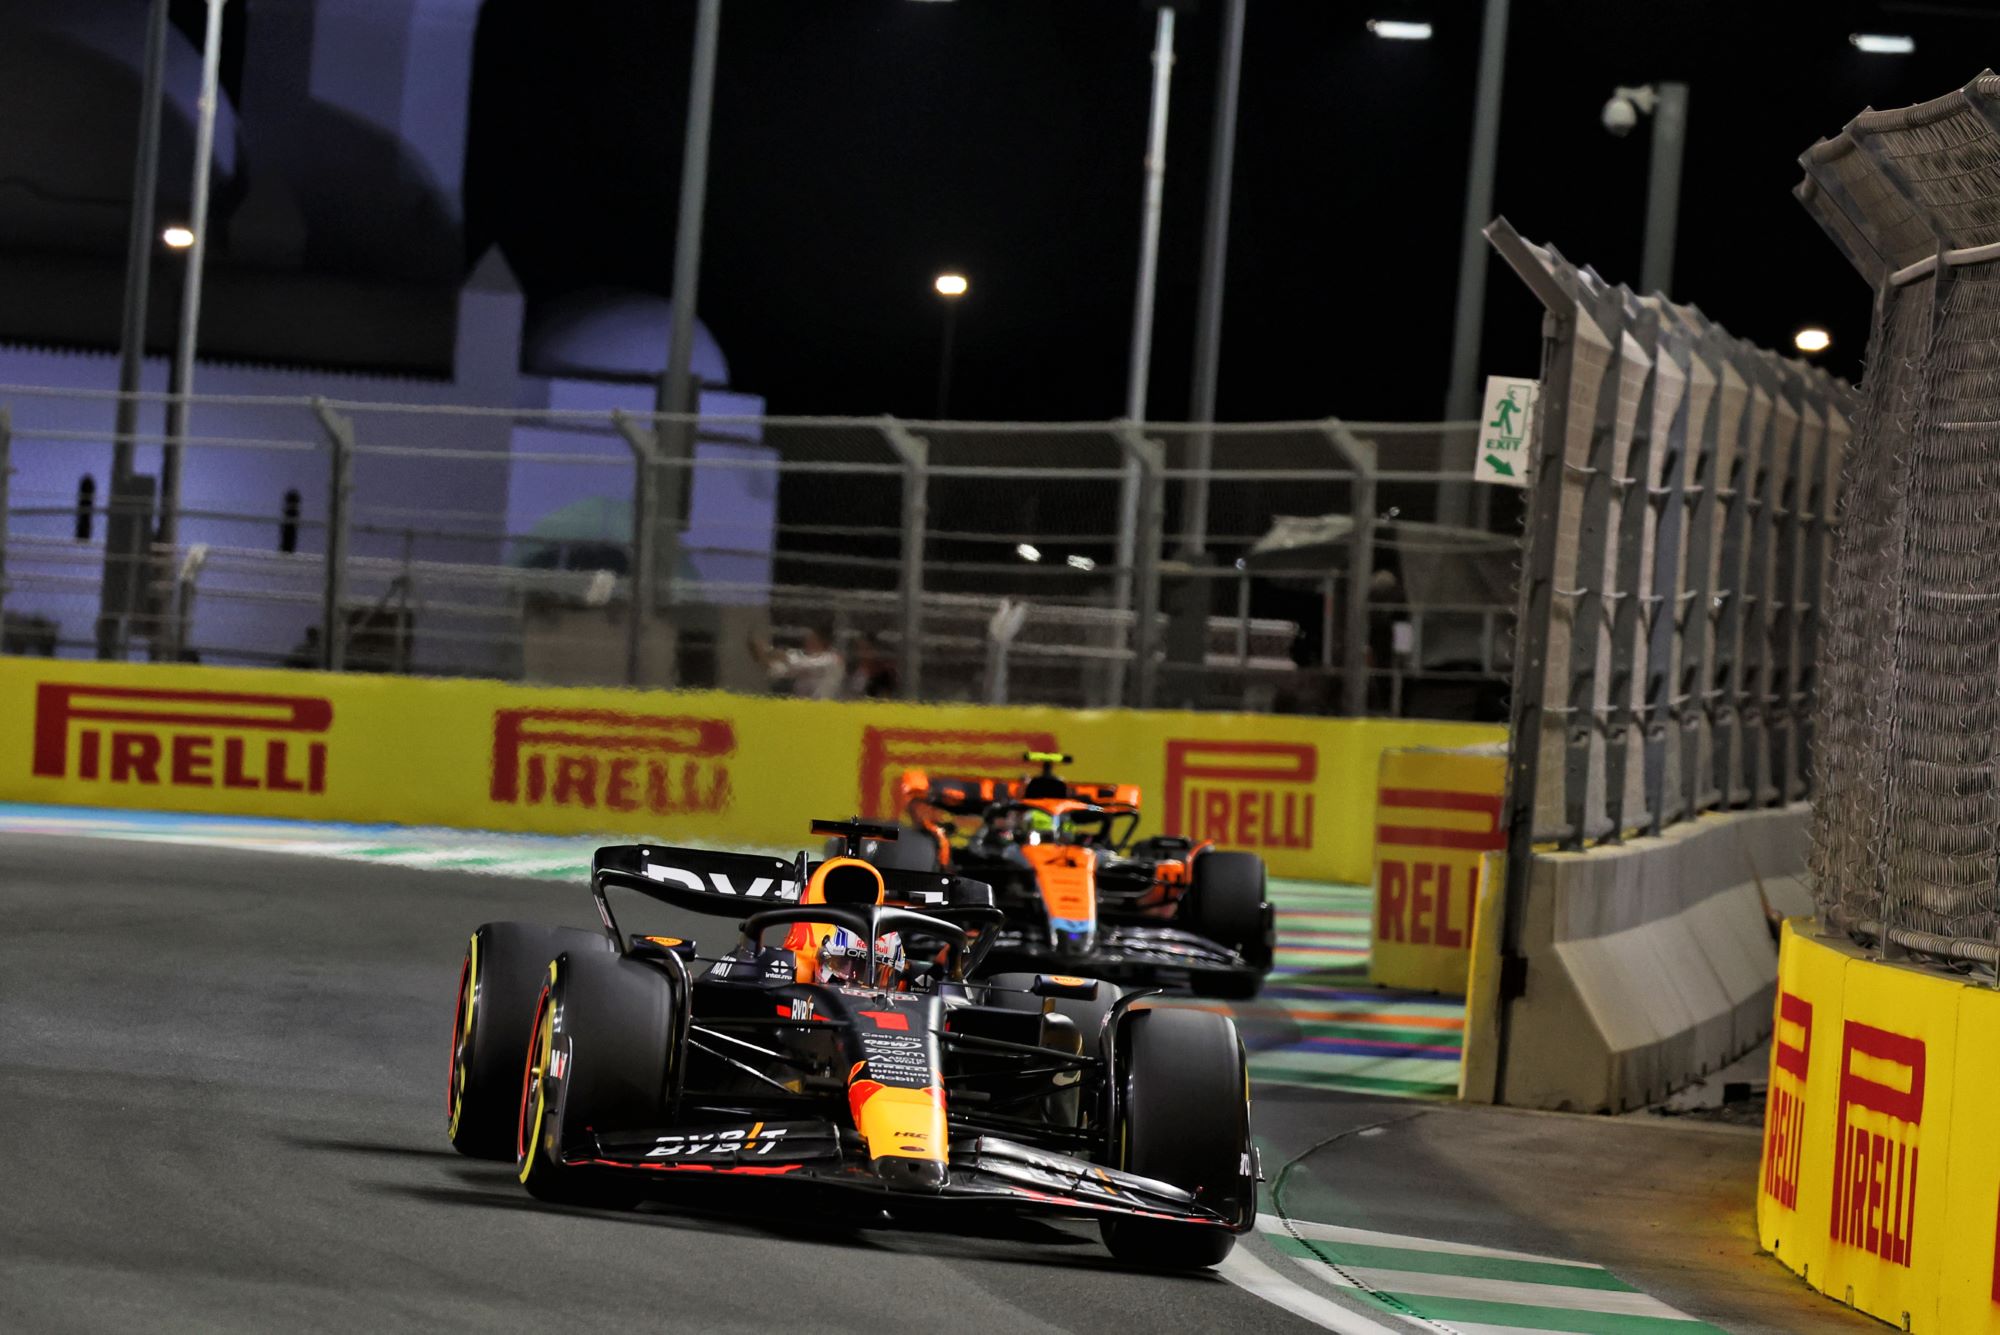 F1: Verstappen classifica o circuito de Jeddah como ‘mais perigoso’ após foco na segurança de Spa